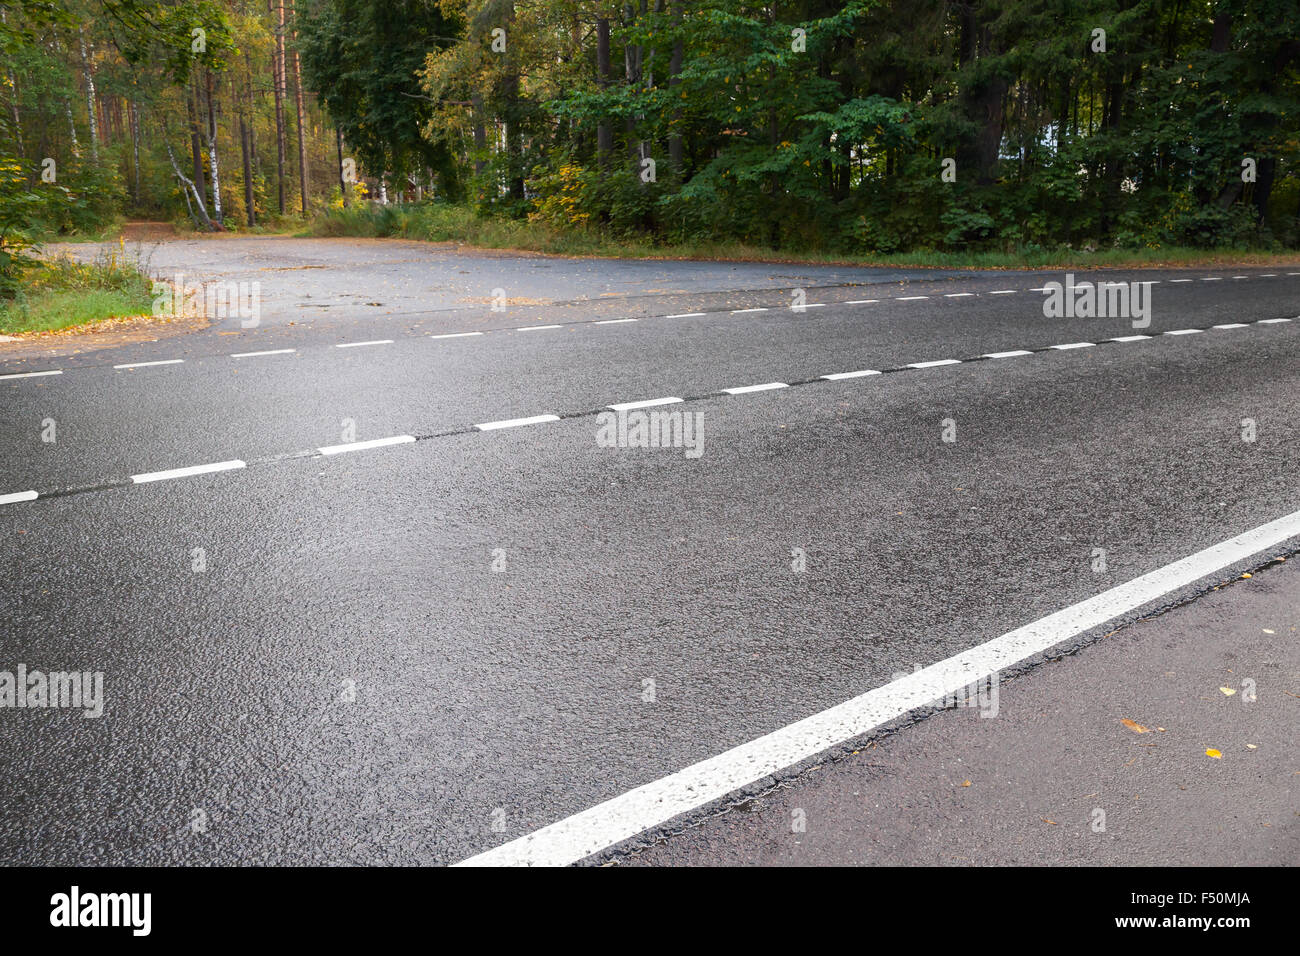 Wet rural strada asfaltata a strisce con linea di demarcazione Foto Stock